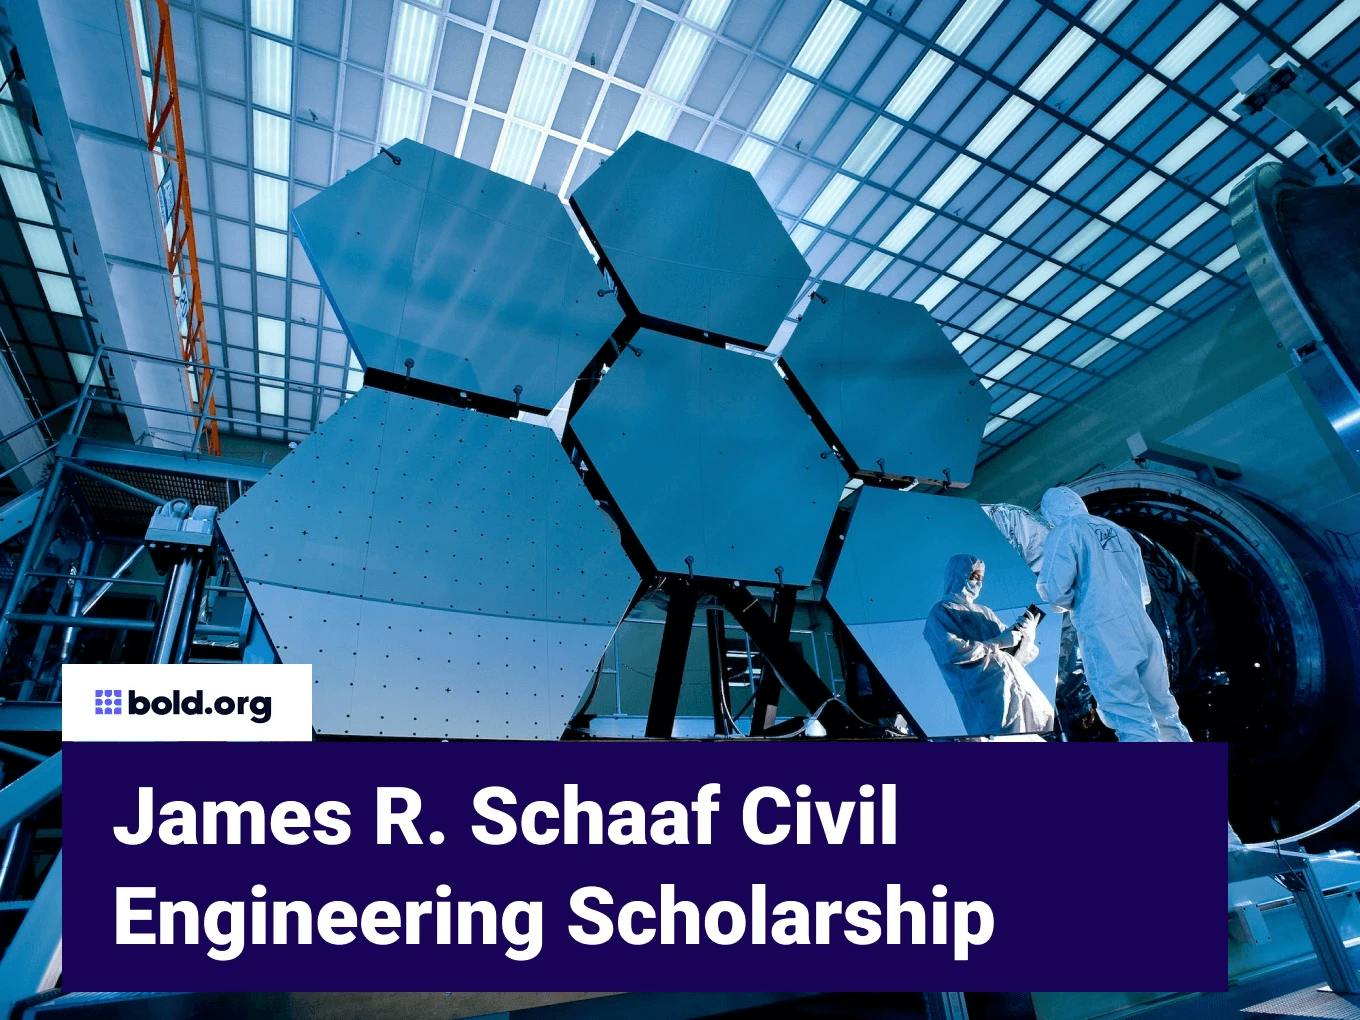 James R. Schaaf Civil Engineering Scholarship